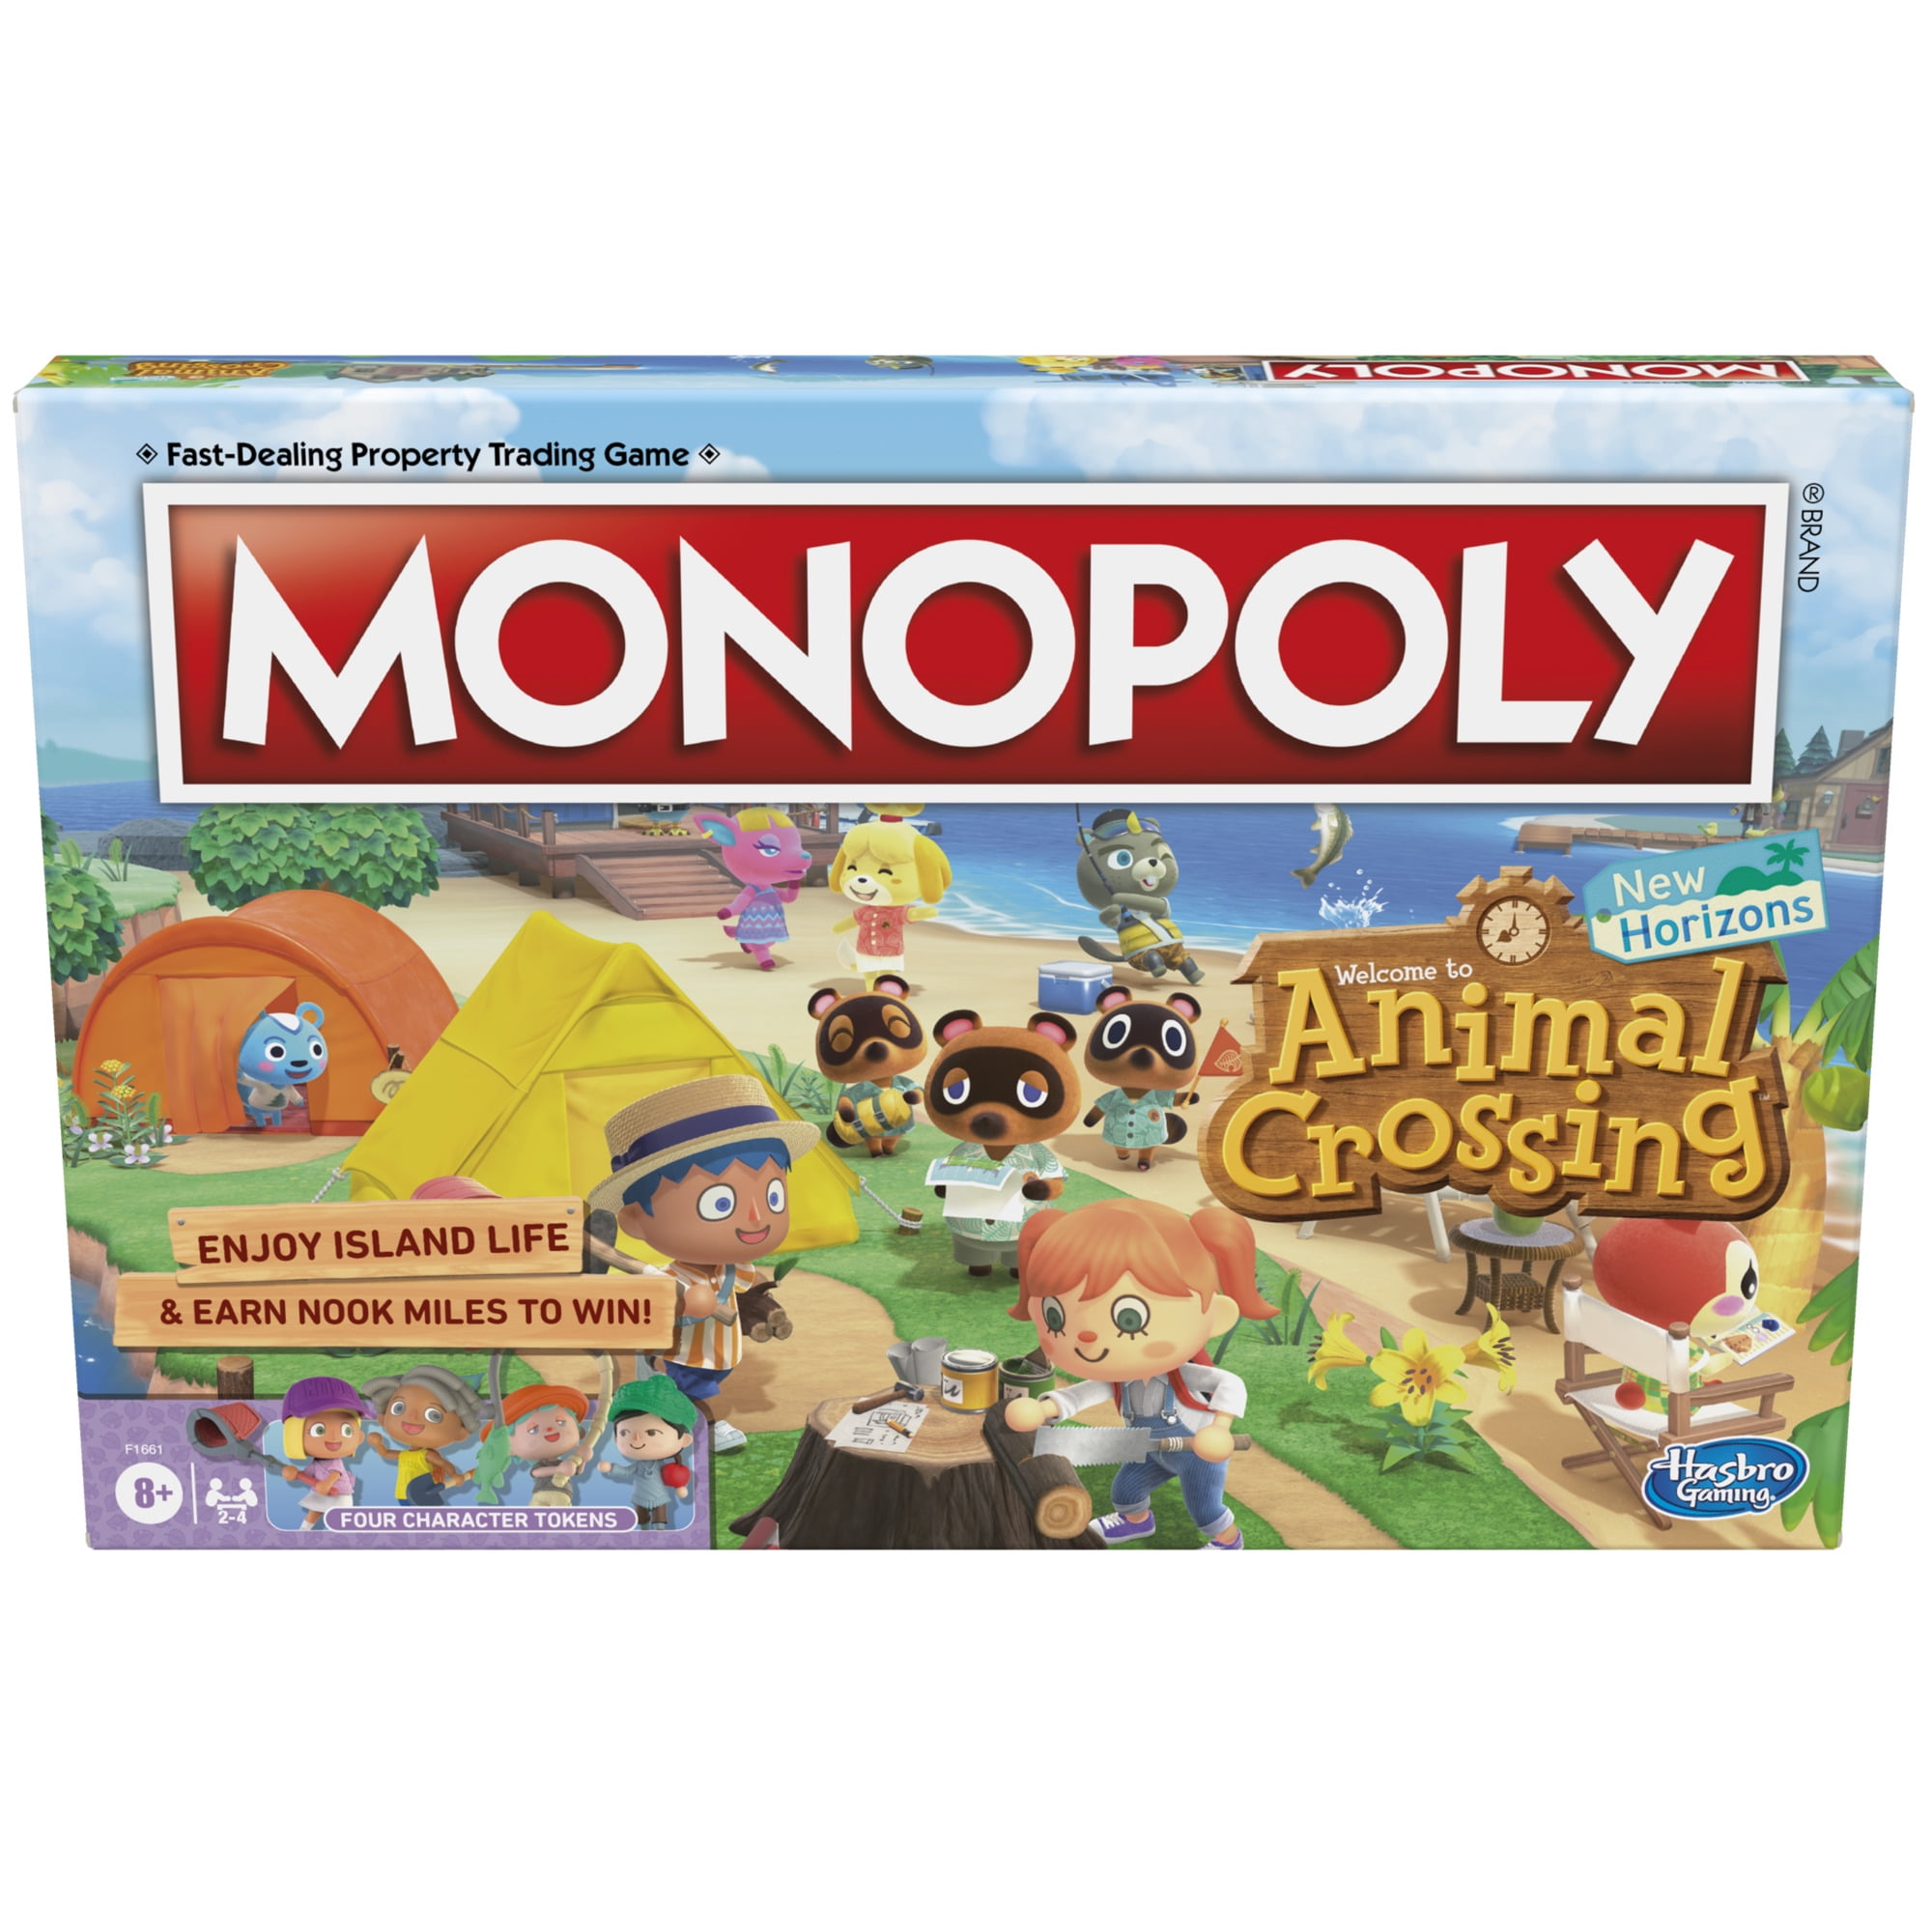 Jogo da Vida do Mario e Monopoly do Animal Crossing são lançados